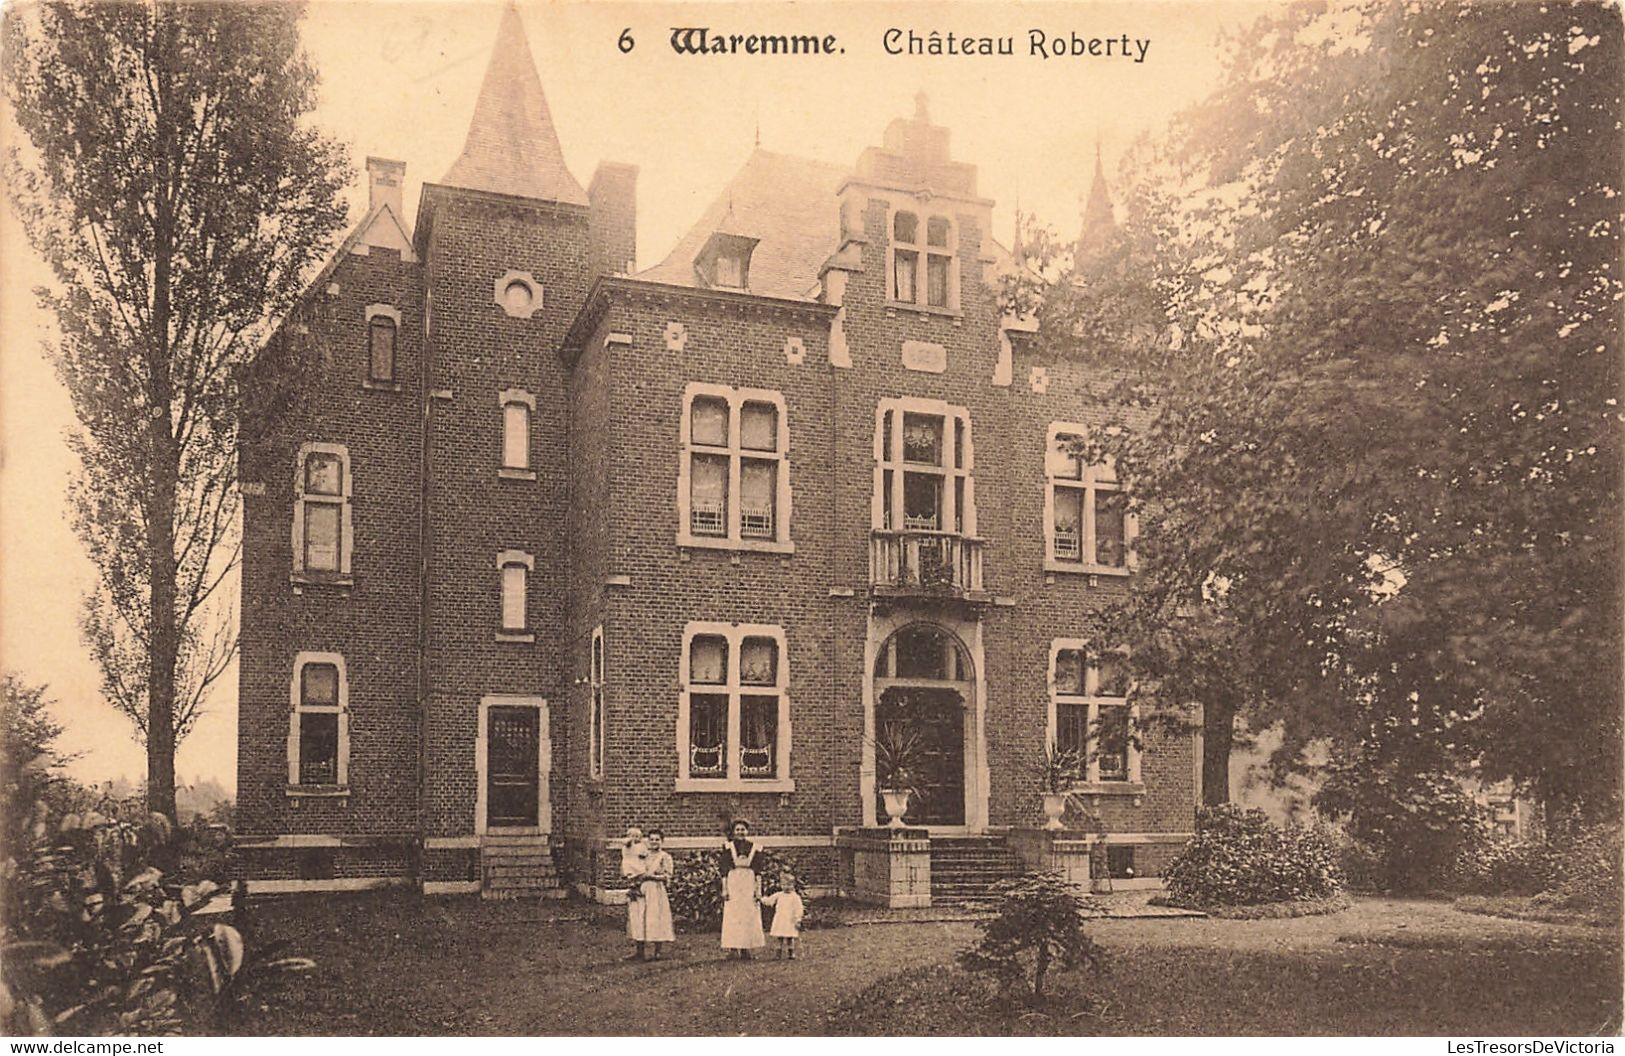 Belgique - Waremme - Chateau Roberty - Edit. N. Laflotte - Animé - Oblitéré Waremmes 1913 - Carte Postale Ancienne - Borgworm